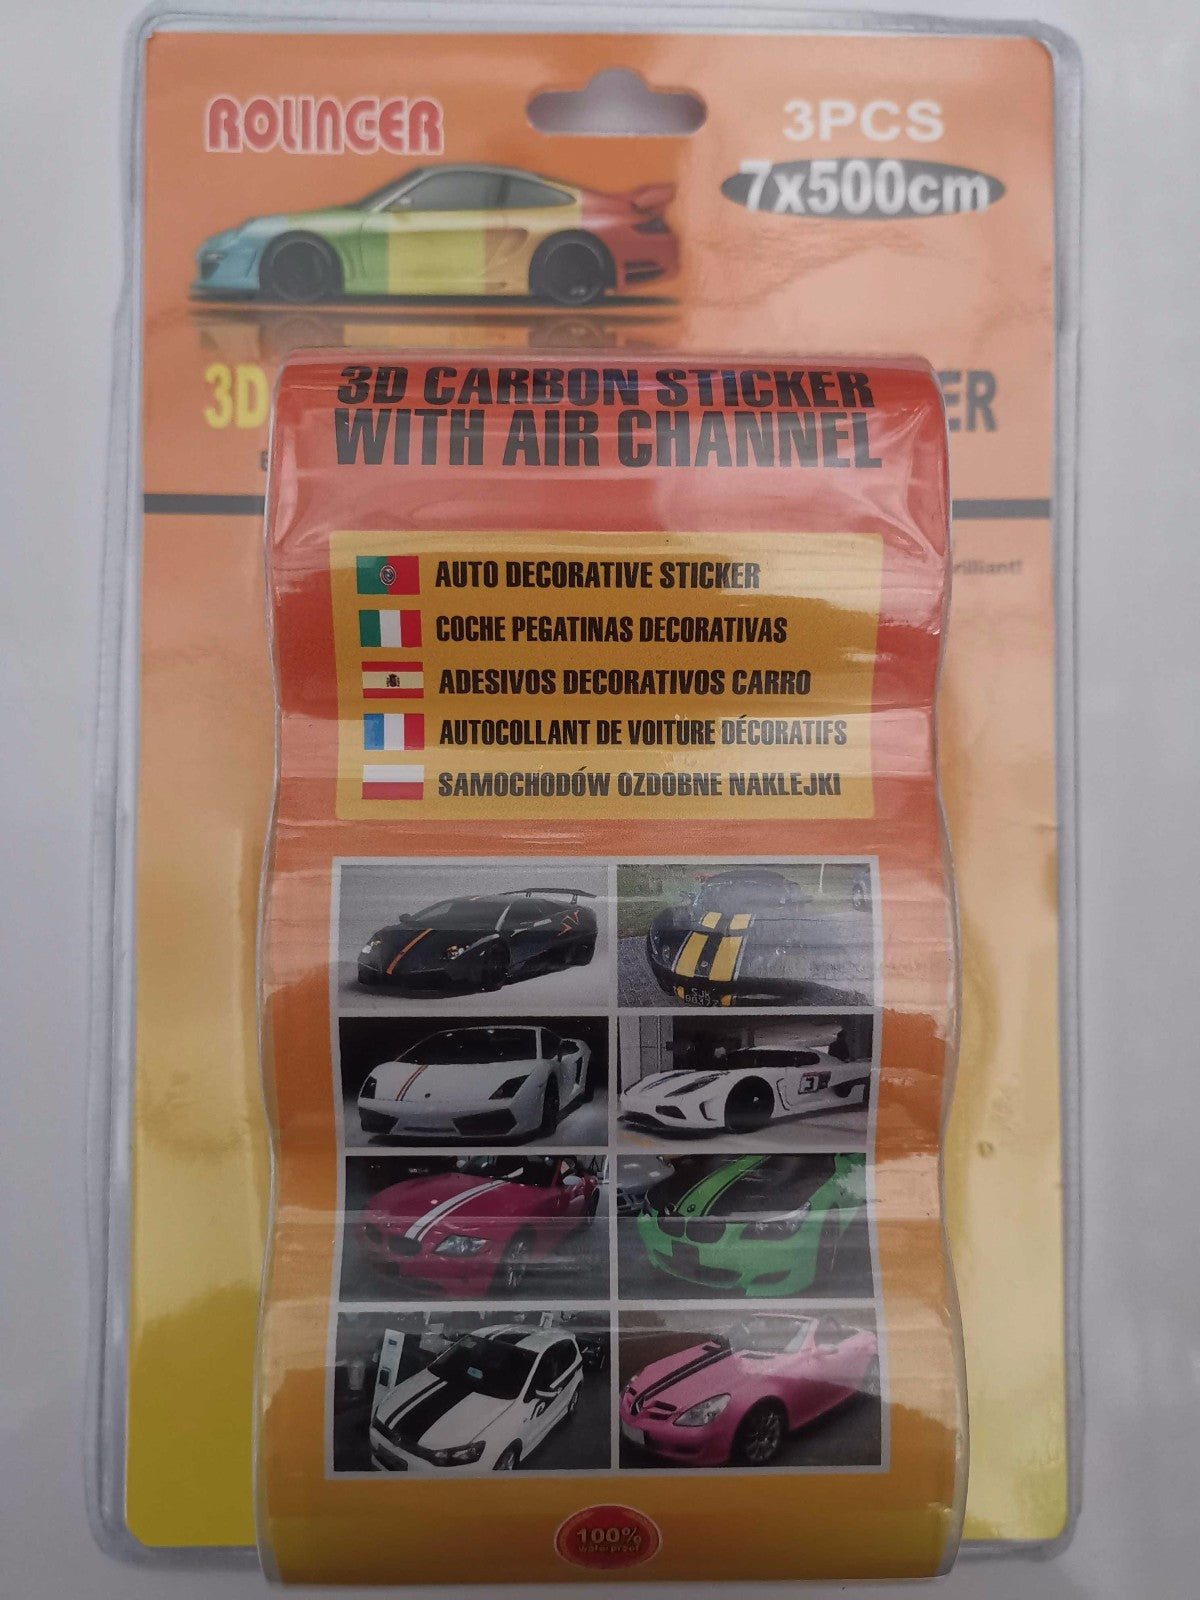 Carbon car stickers - 7x500cm - 239416 - Black